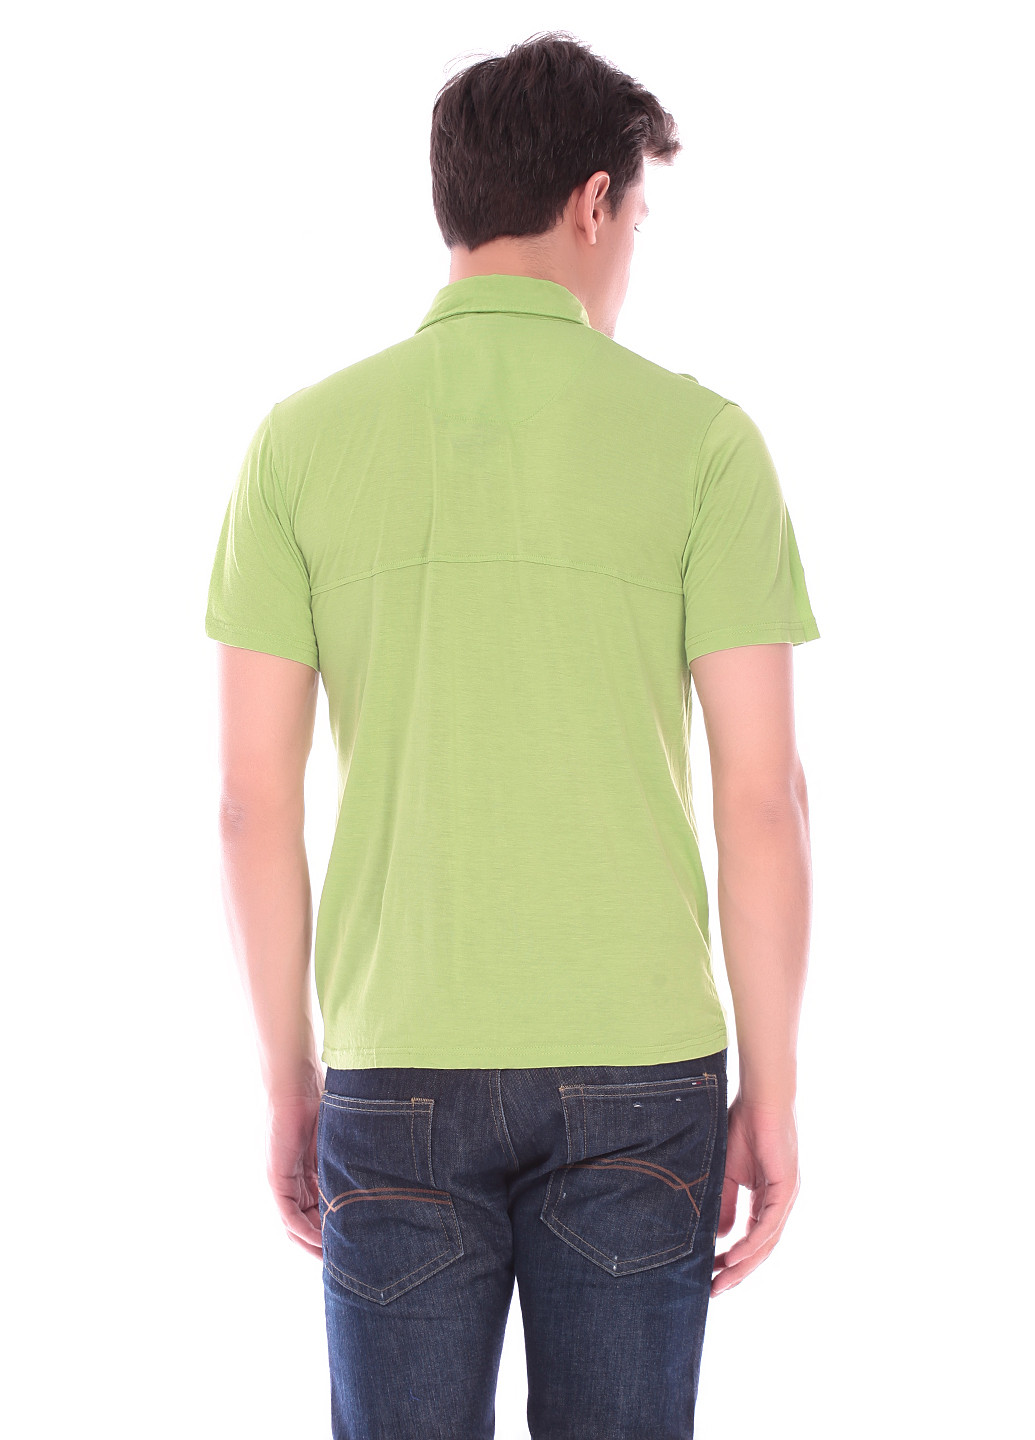 Салатовая футболка-поло для мужчин Skunfunk однотонная